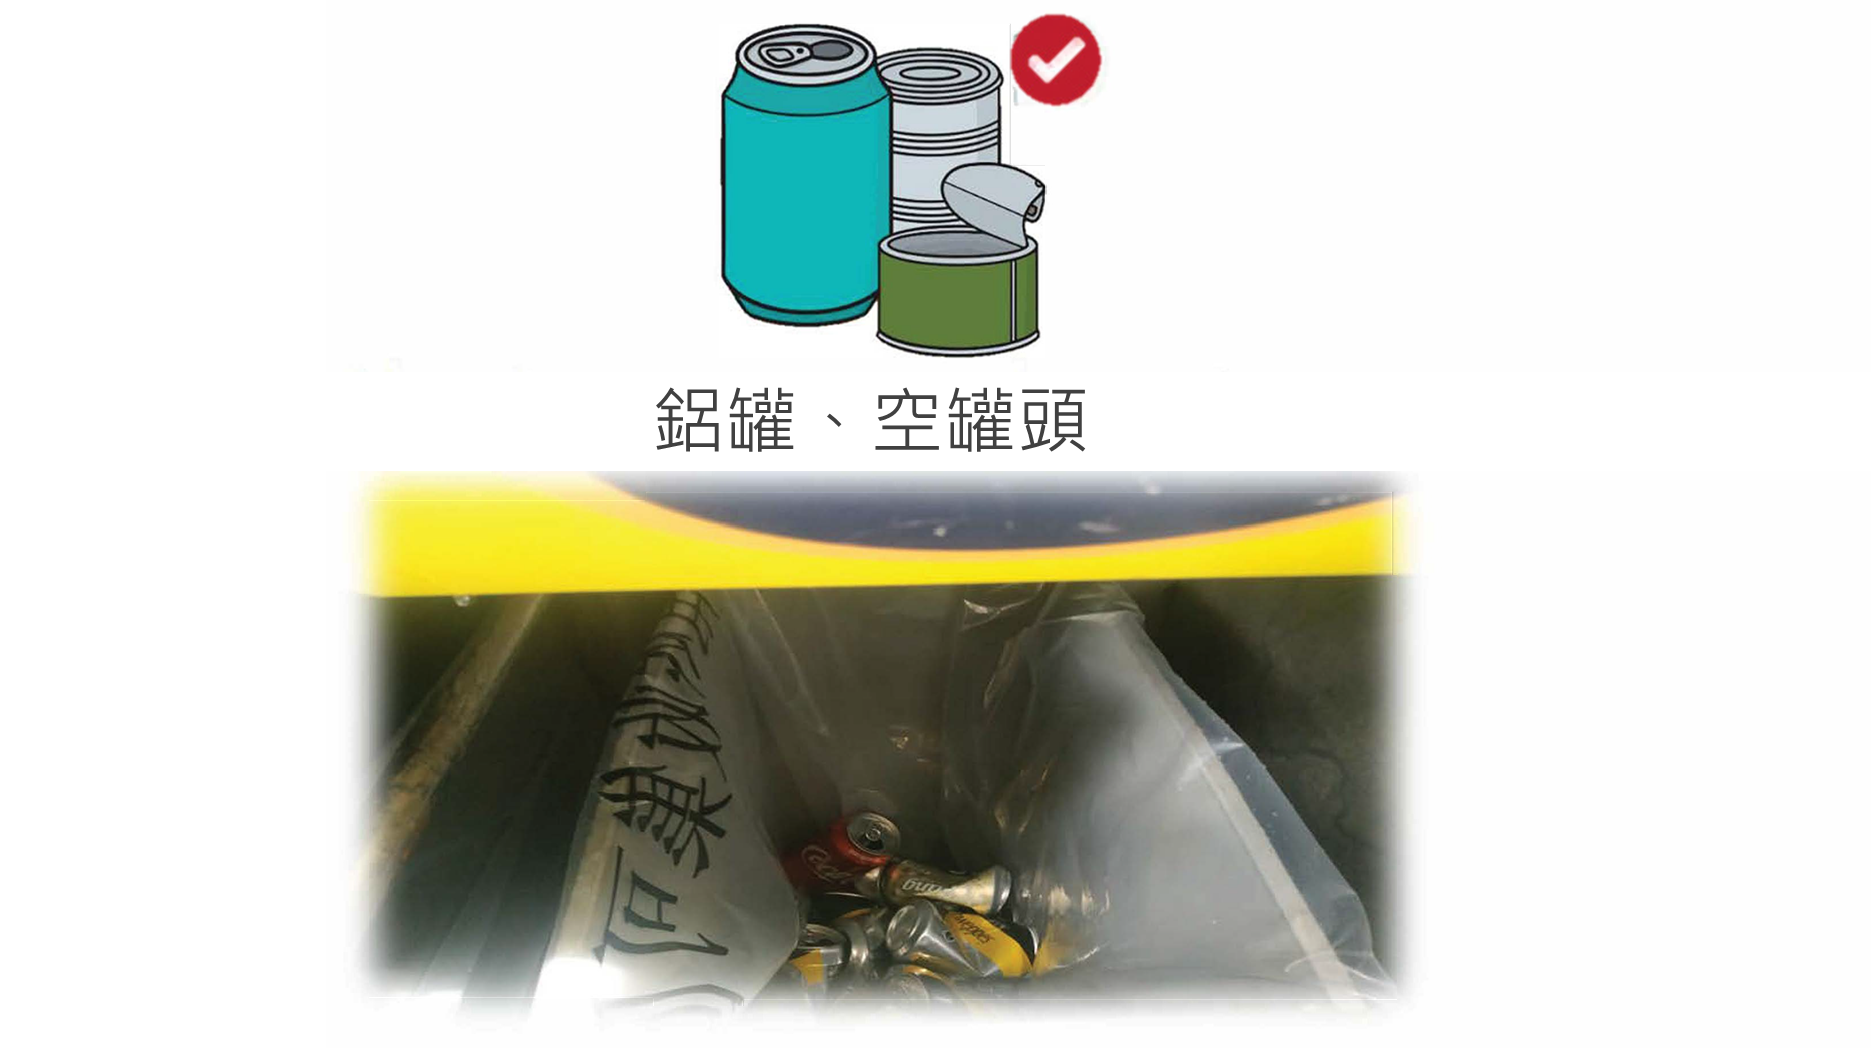 乾淨回收鋁罐,空罐頭的貼士 - 去招紙,沖乾淨